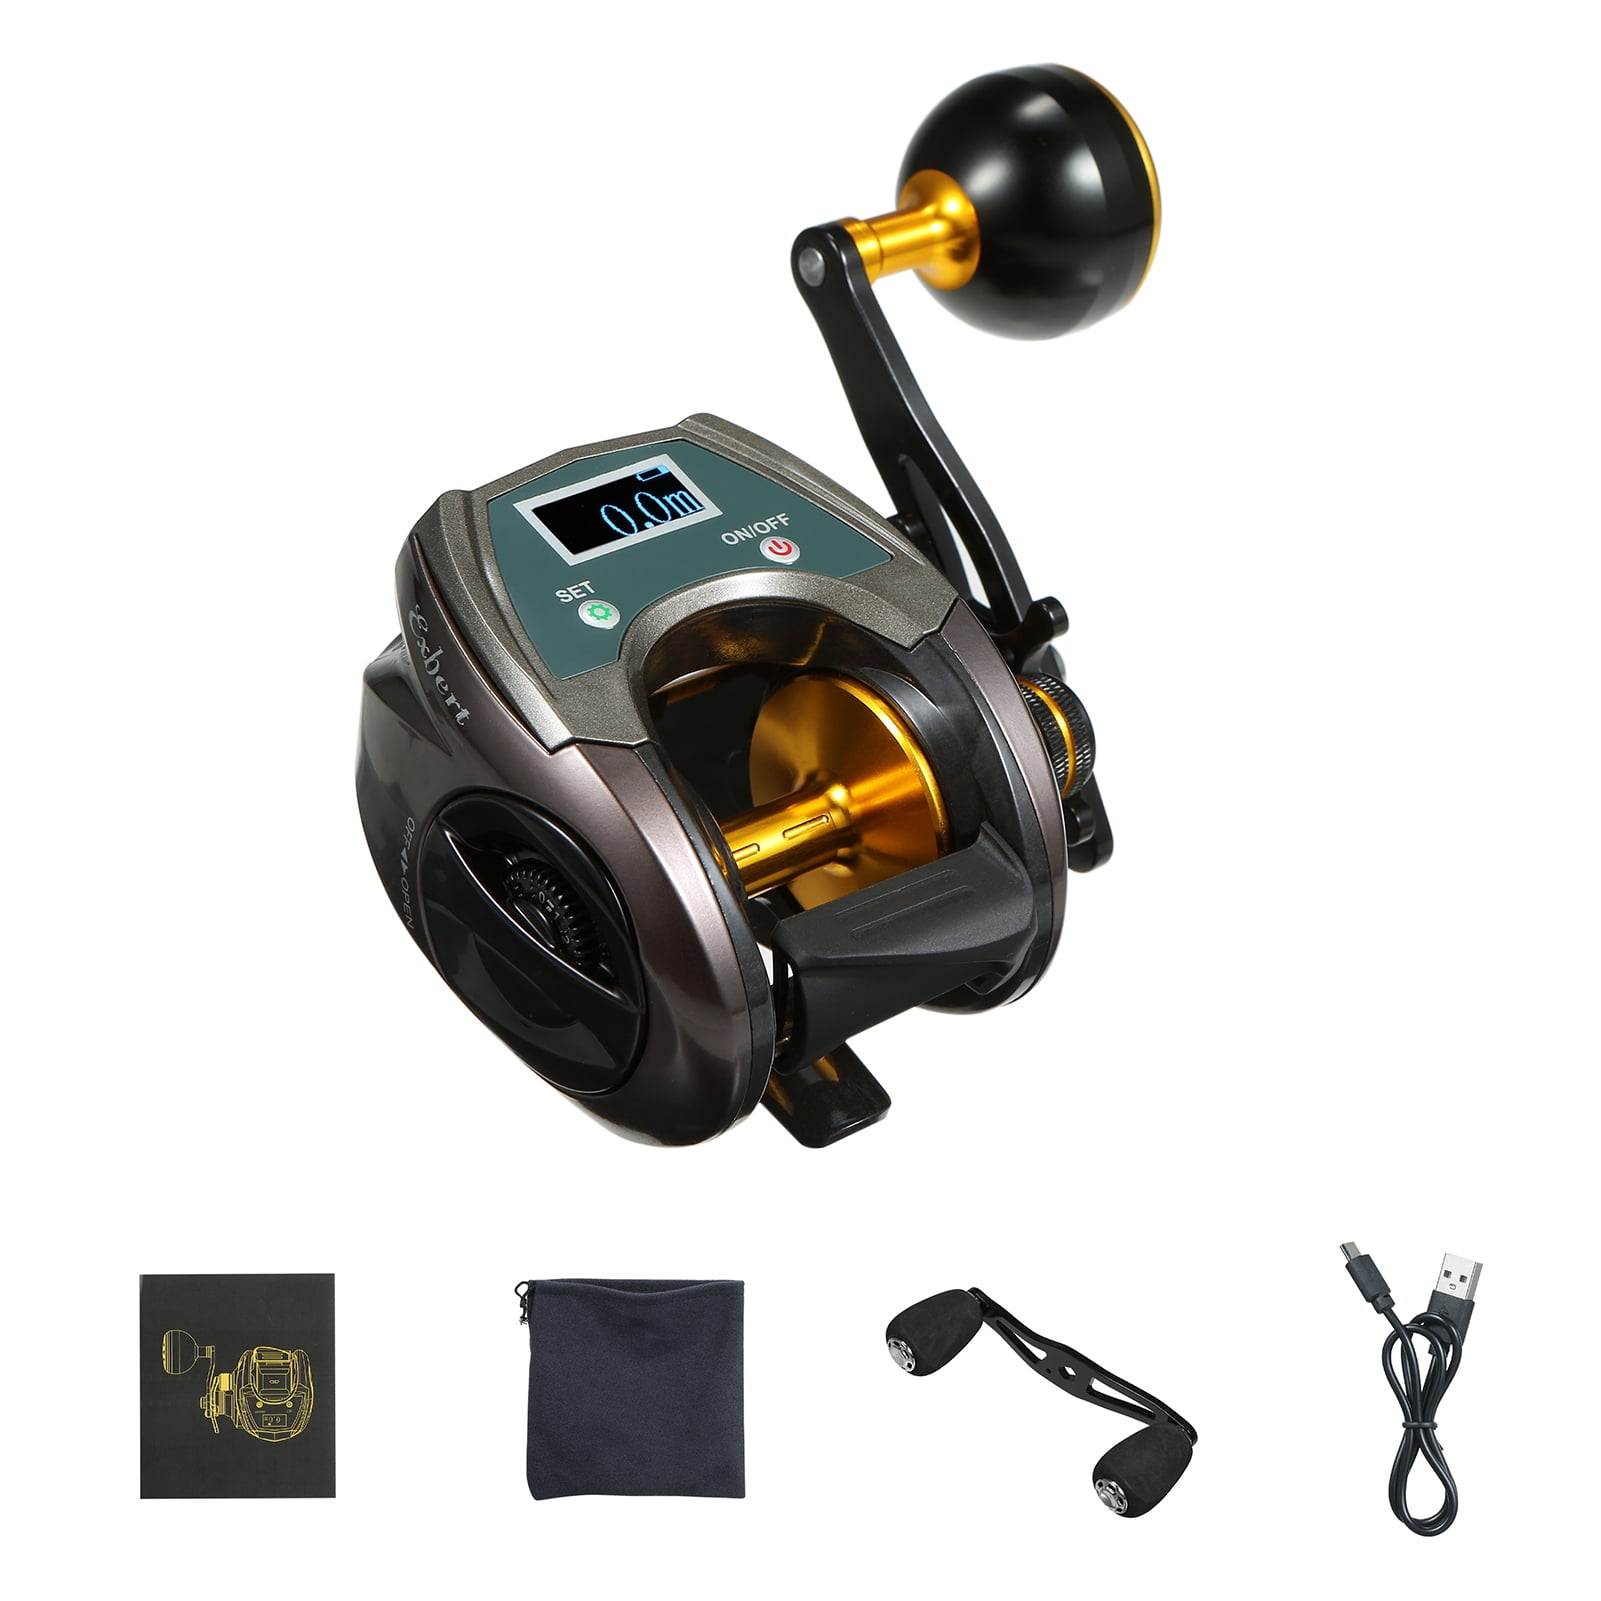 OKUMA LOE II 2000 High Quality Fishing Reel Spinning Reel Gear Ratio 5.0:1  Ball Bearing